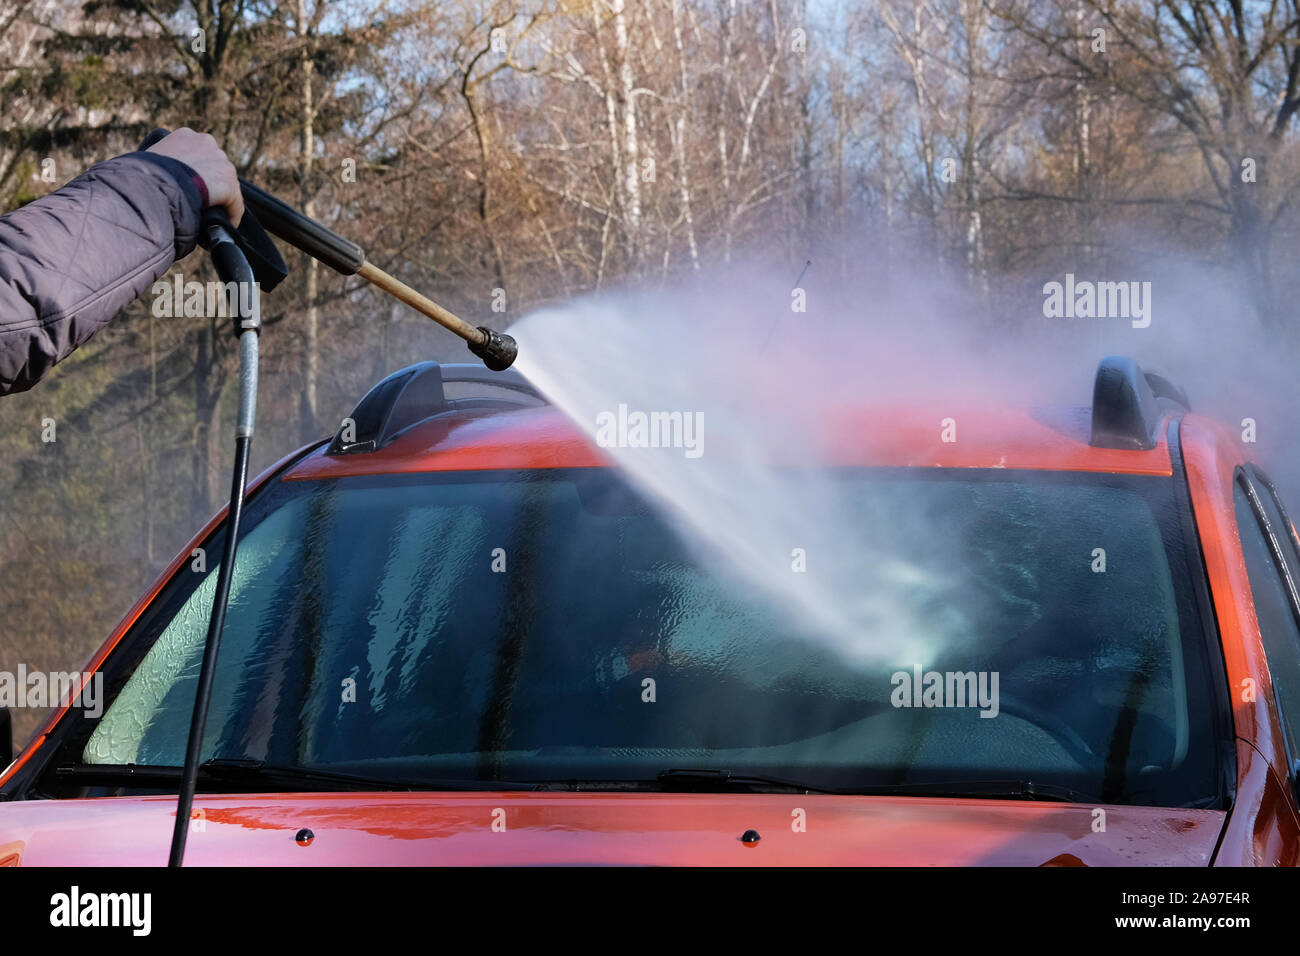 Nettoyage à l'eau au lavage de voiture en libre-service. L'homme se lave dans son pare-brise de voiture orange. L'eau savonneuse coule vers le bas. Banque D'Images